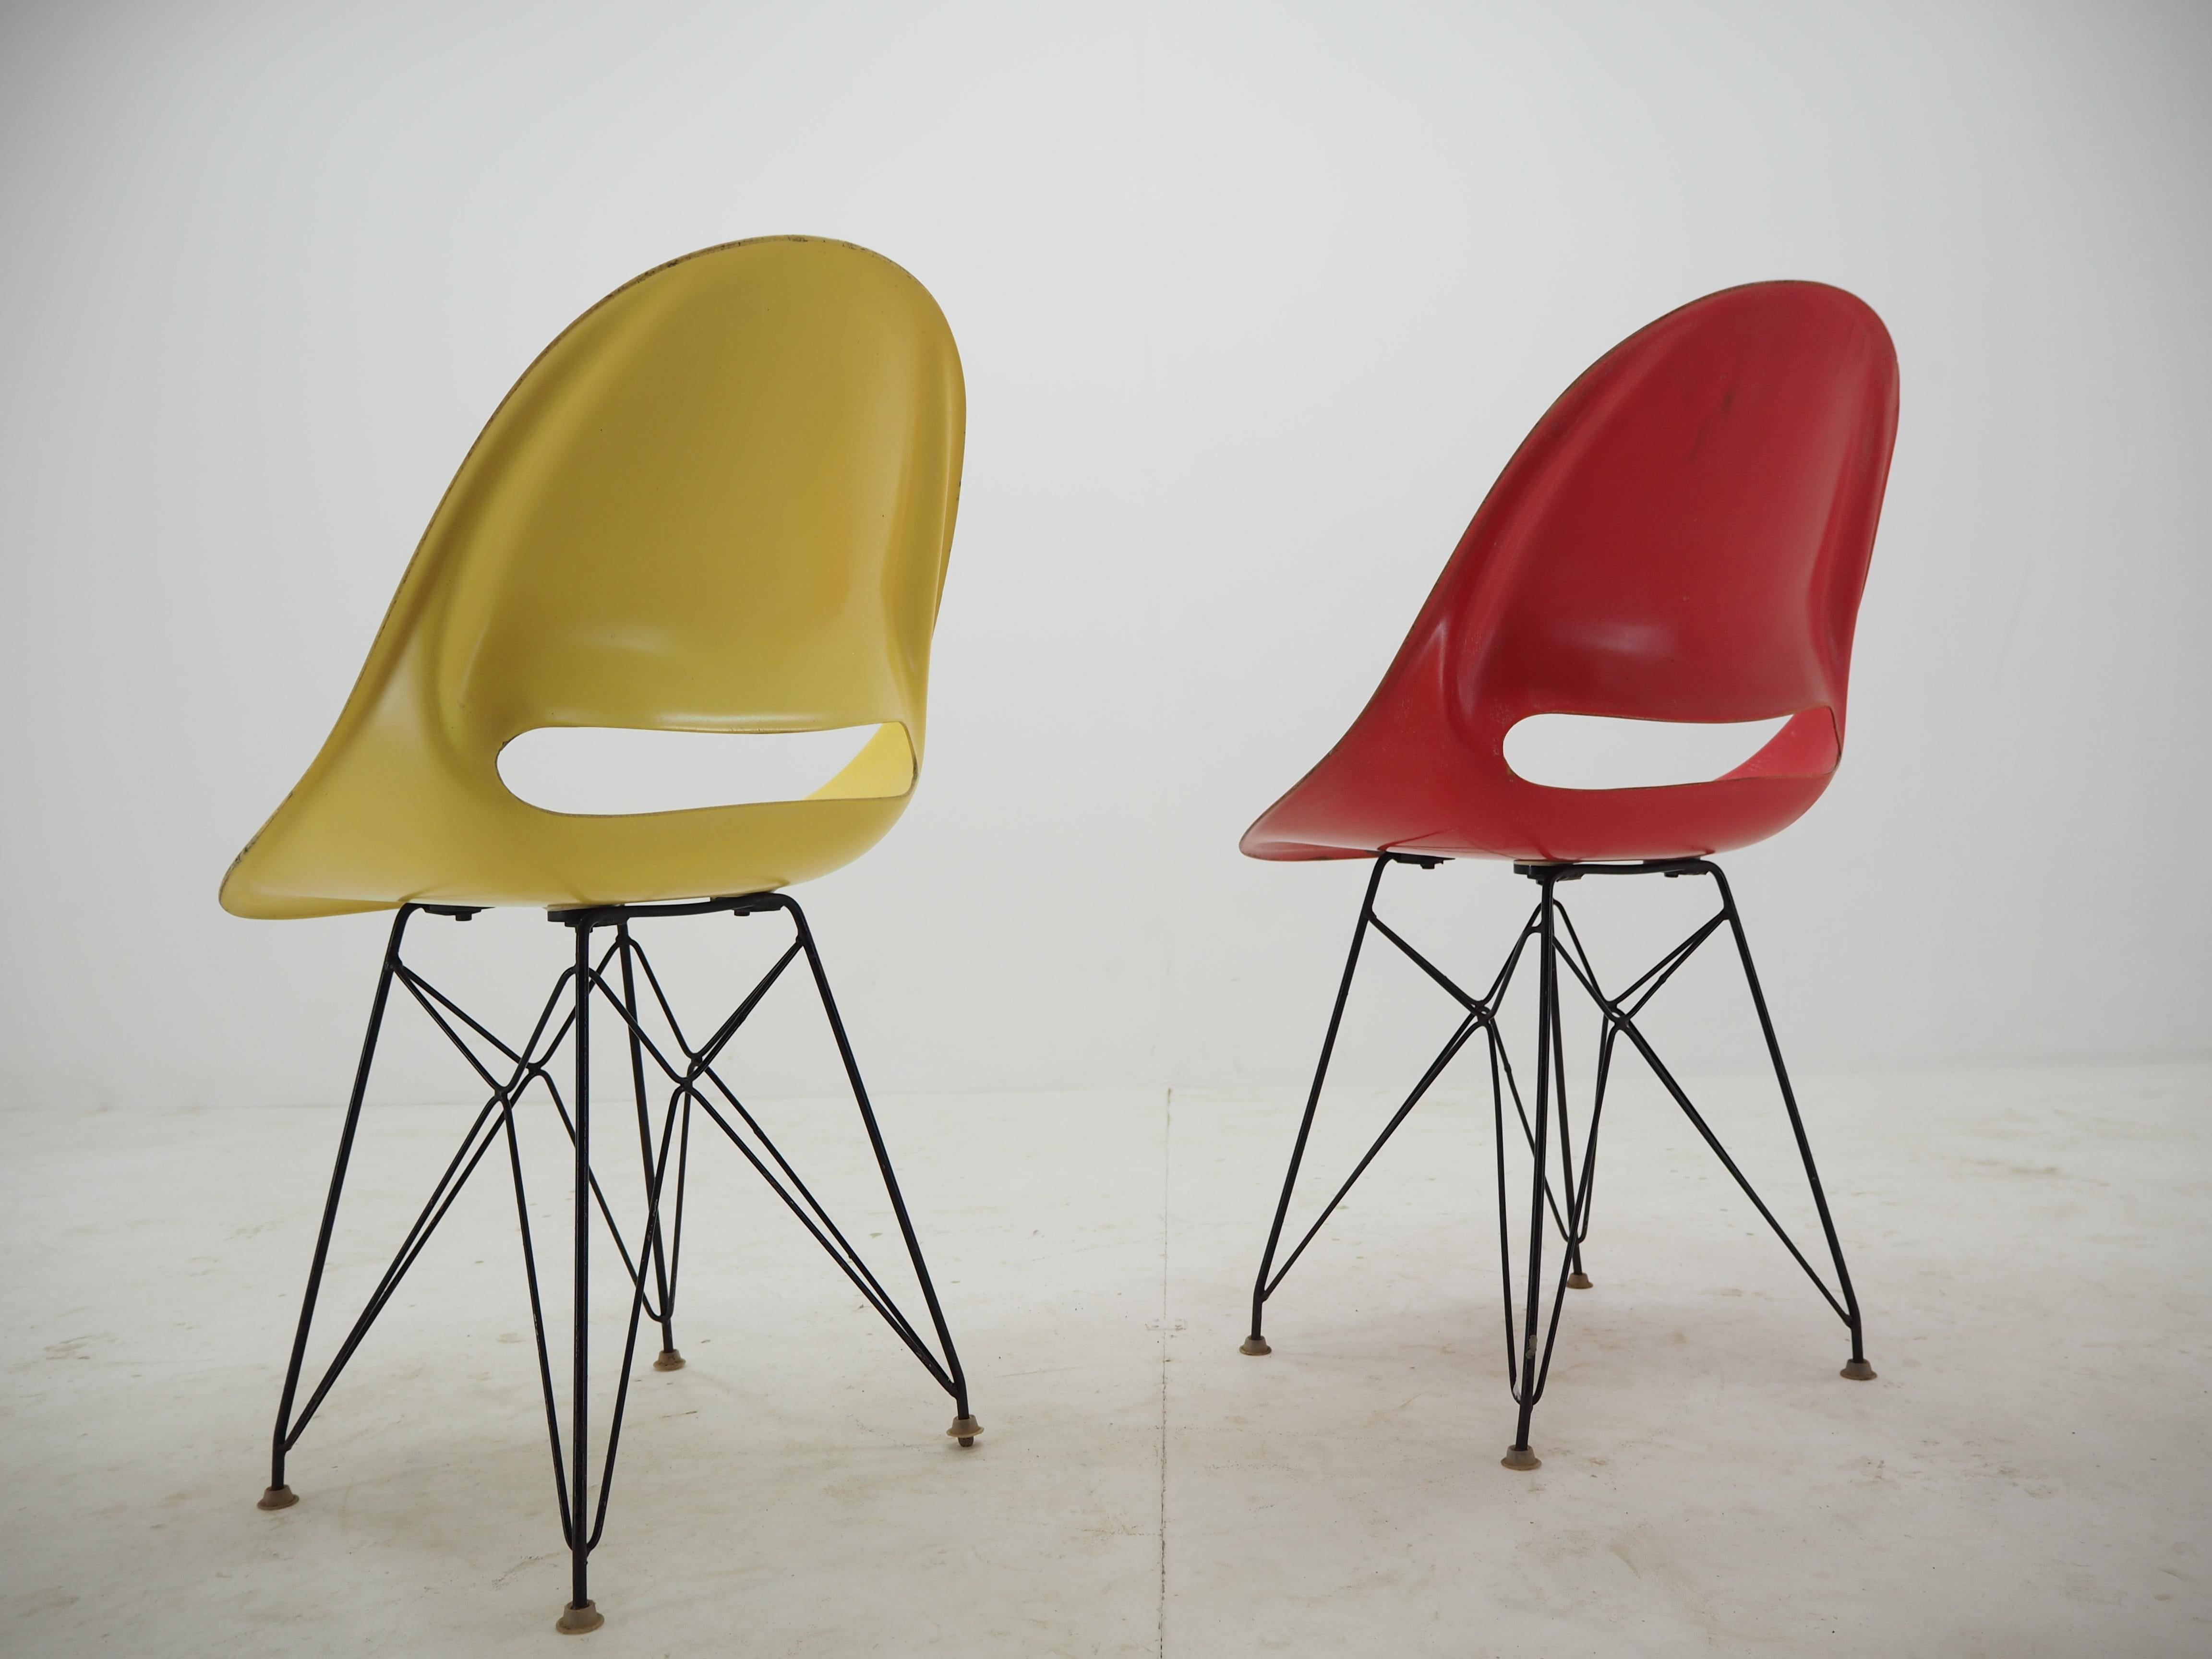 Steel Pair of Midcentury Chairs, Vertex, by Miroslav Navratil, 1960s